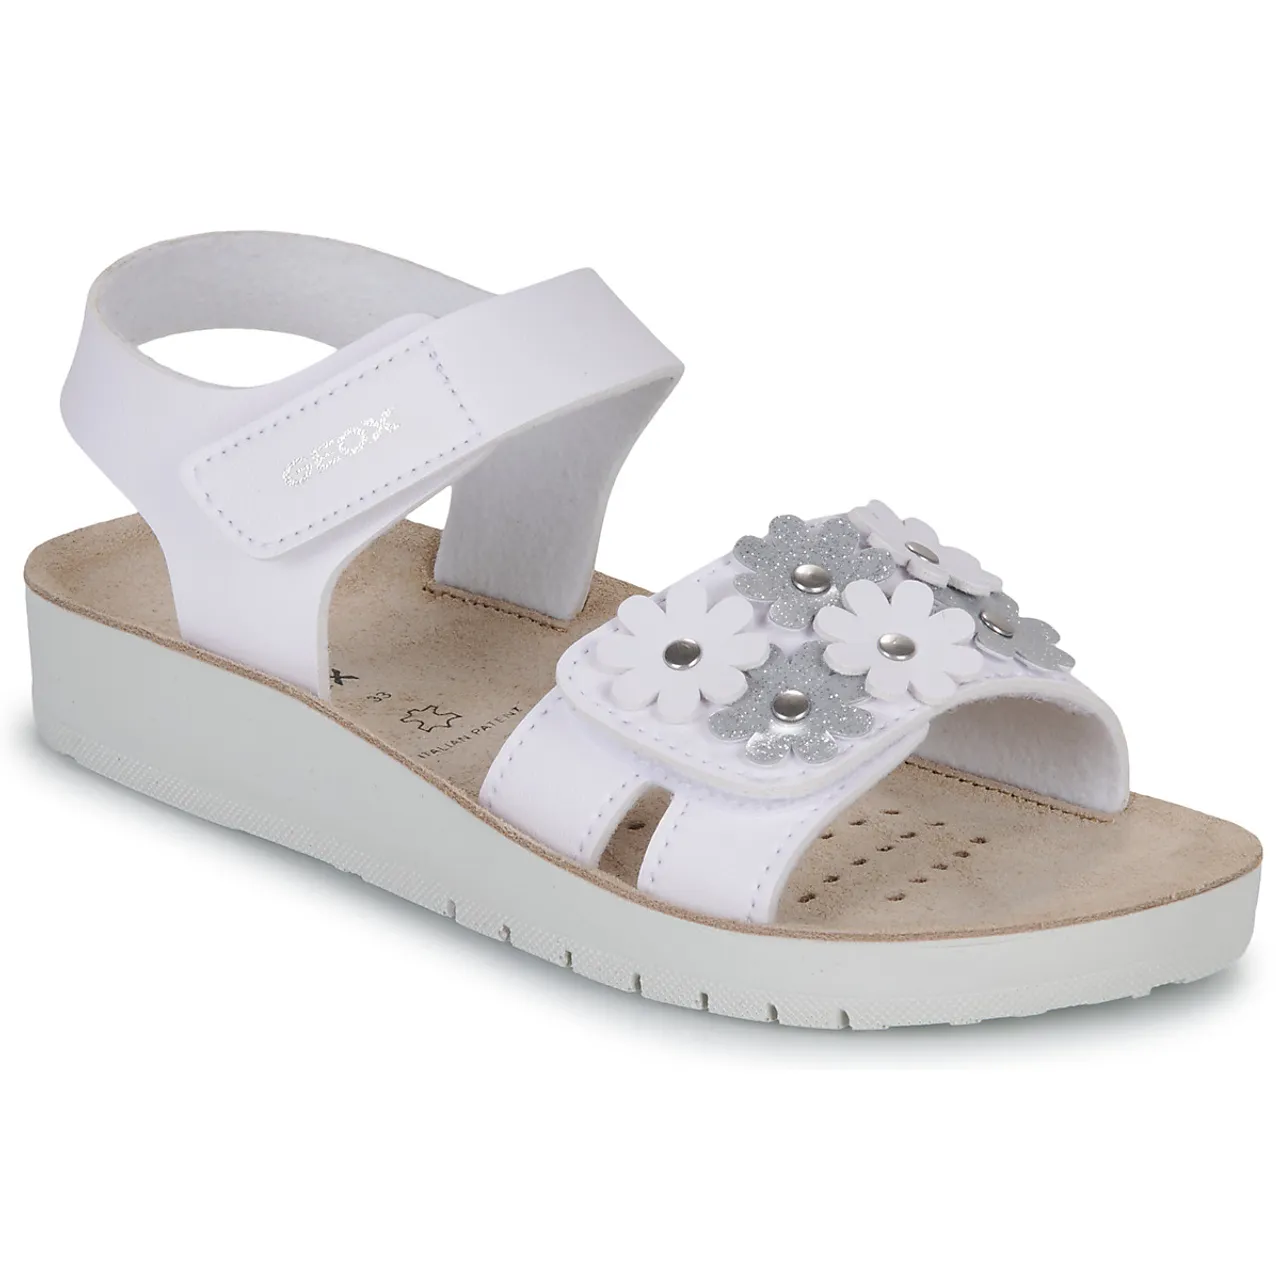 Geox  J SANDAL COSTAREI GI  girls's Children's Sandals in White